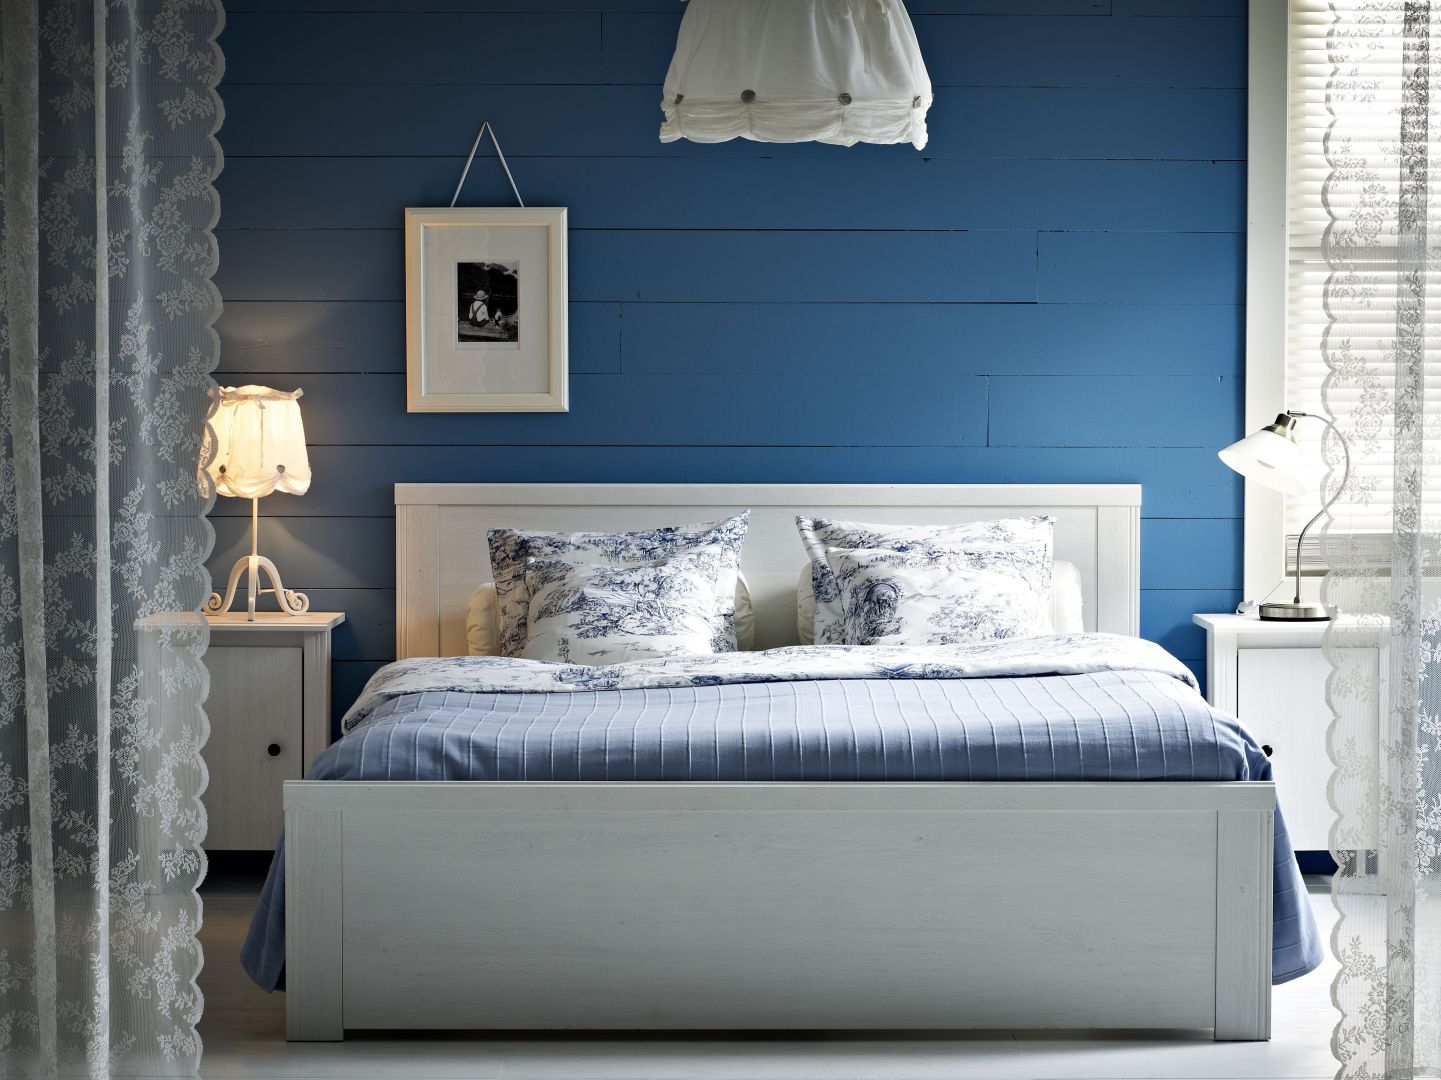 Łóżko Brusali, wykonane w białym drewnie, pasujące do wnętrz cottage, marki IKEA
Fot. IKEA